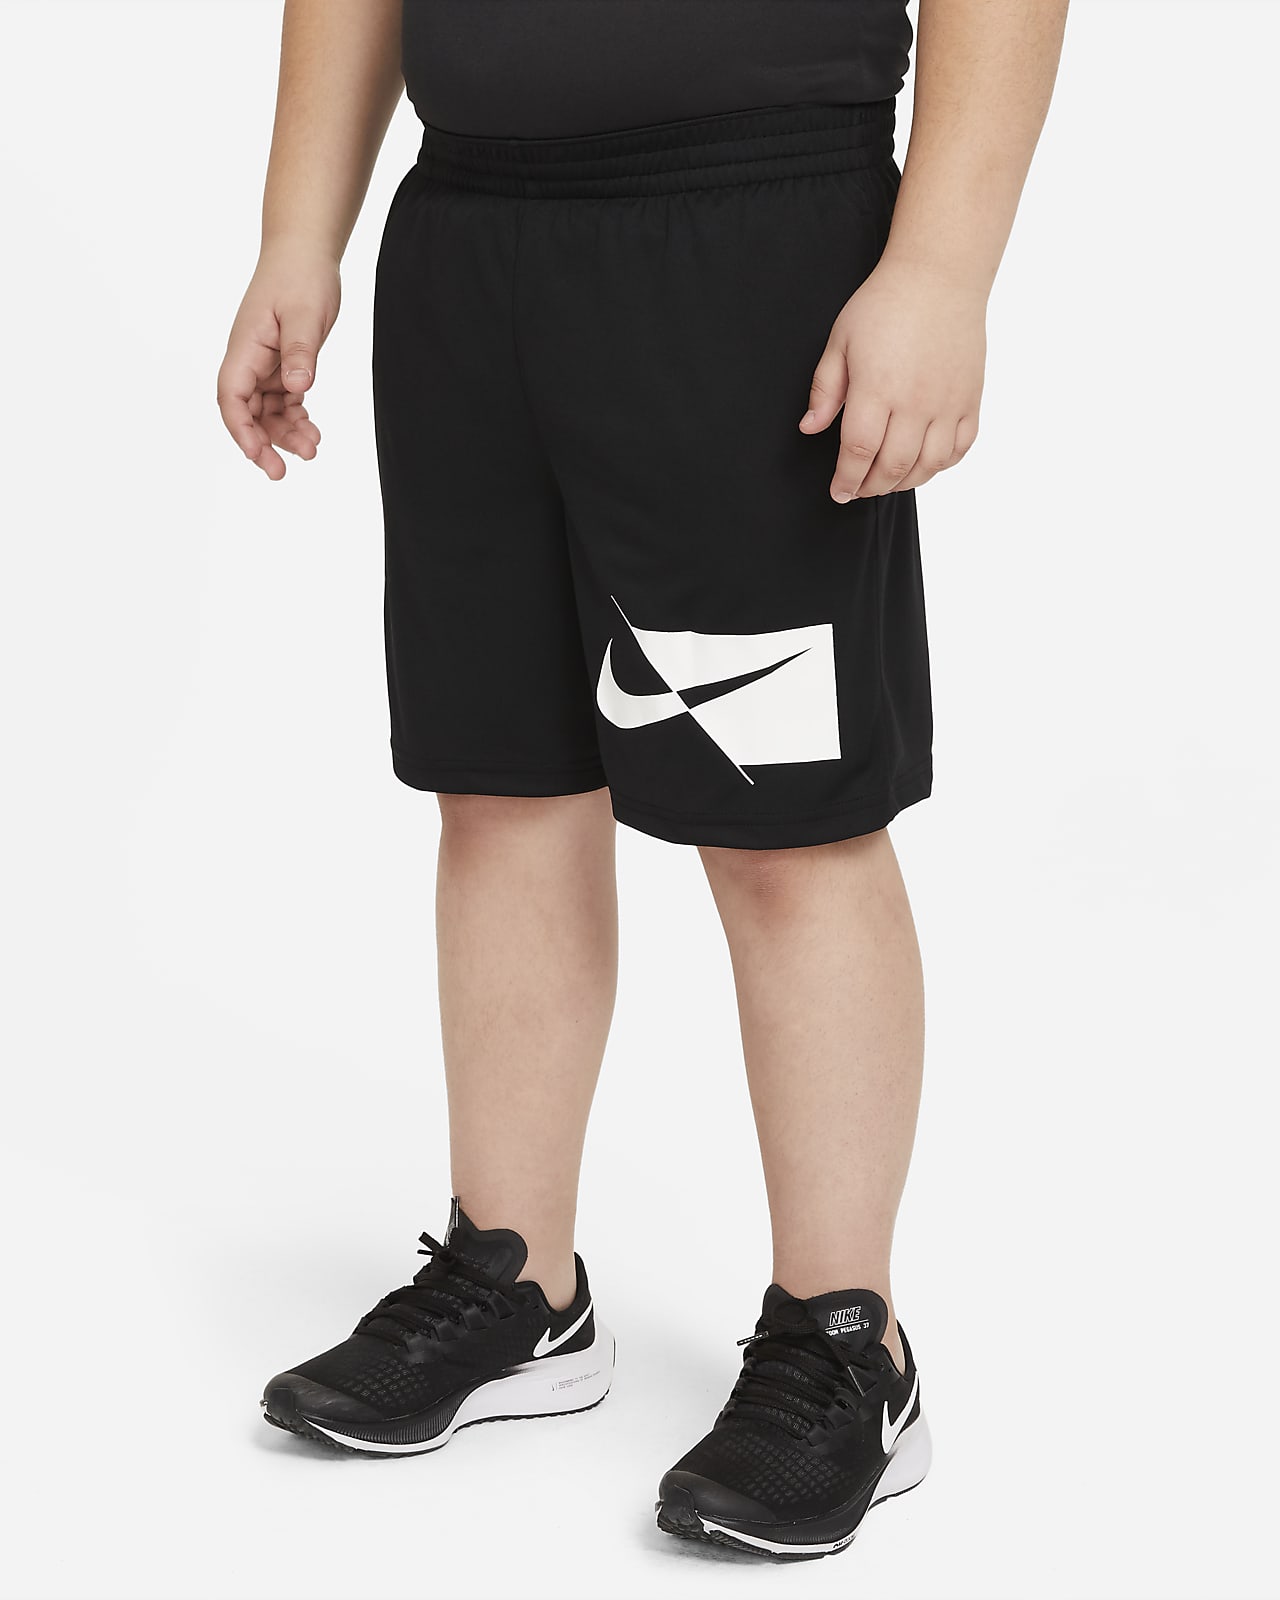 Nike Dri-FIT Trainingsshorts für ältere Kinder (Jungen) (erweiterte Größe)